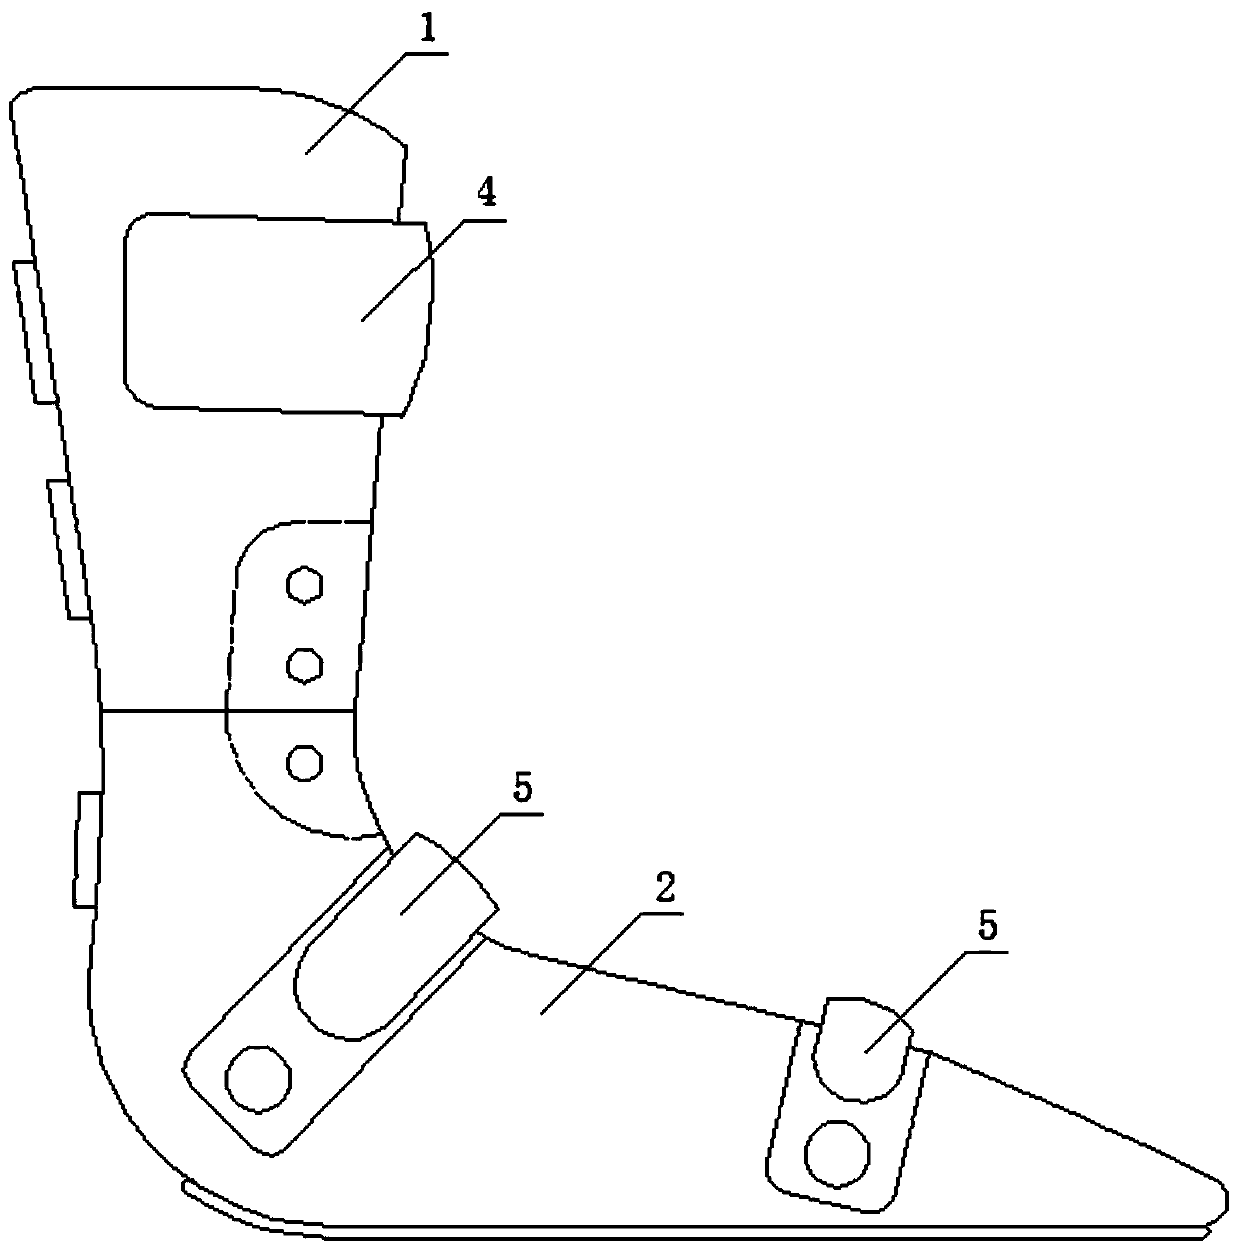 Orthopedic ankle rehabilitation device